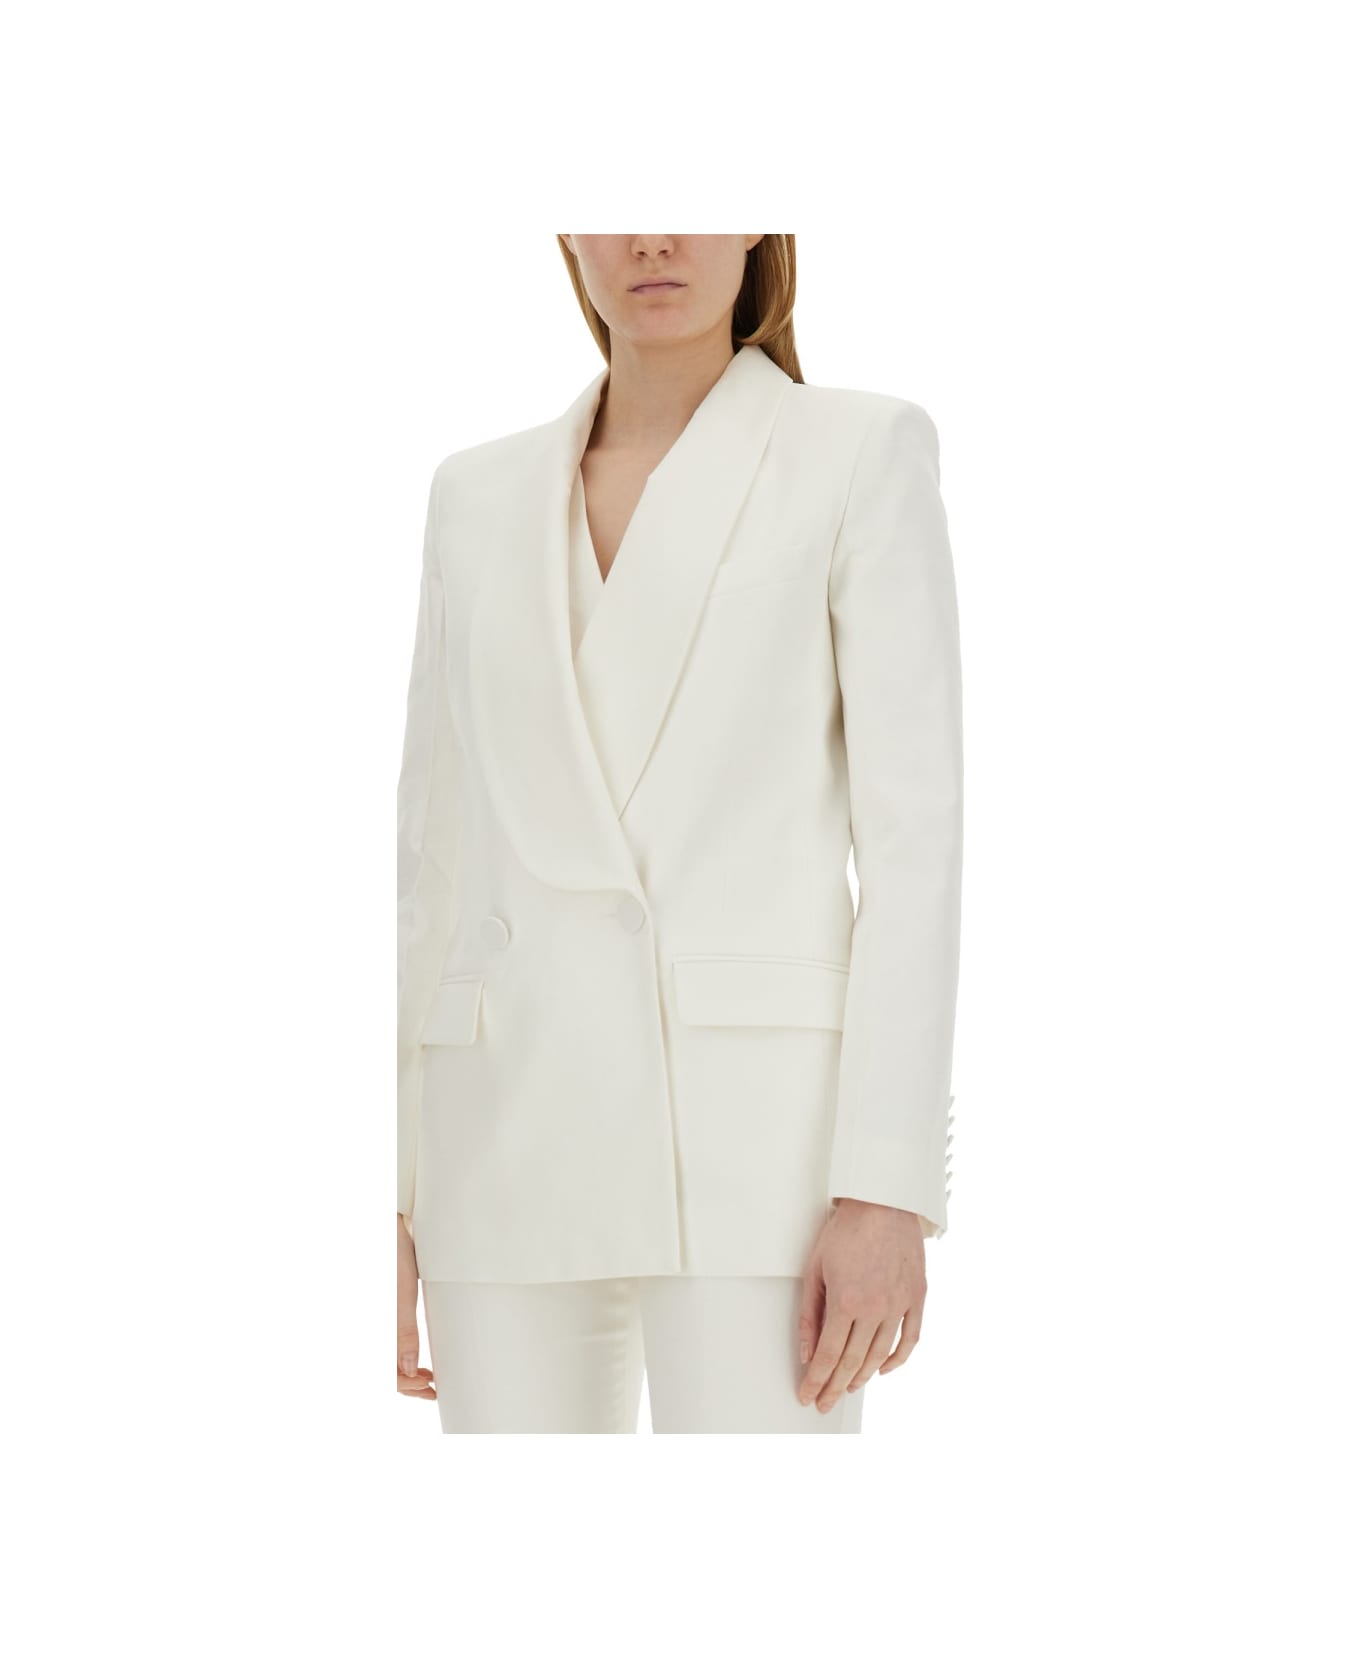 Nina Ricci Double-breasted Jacket - WHITE ジャケット